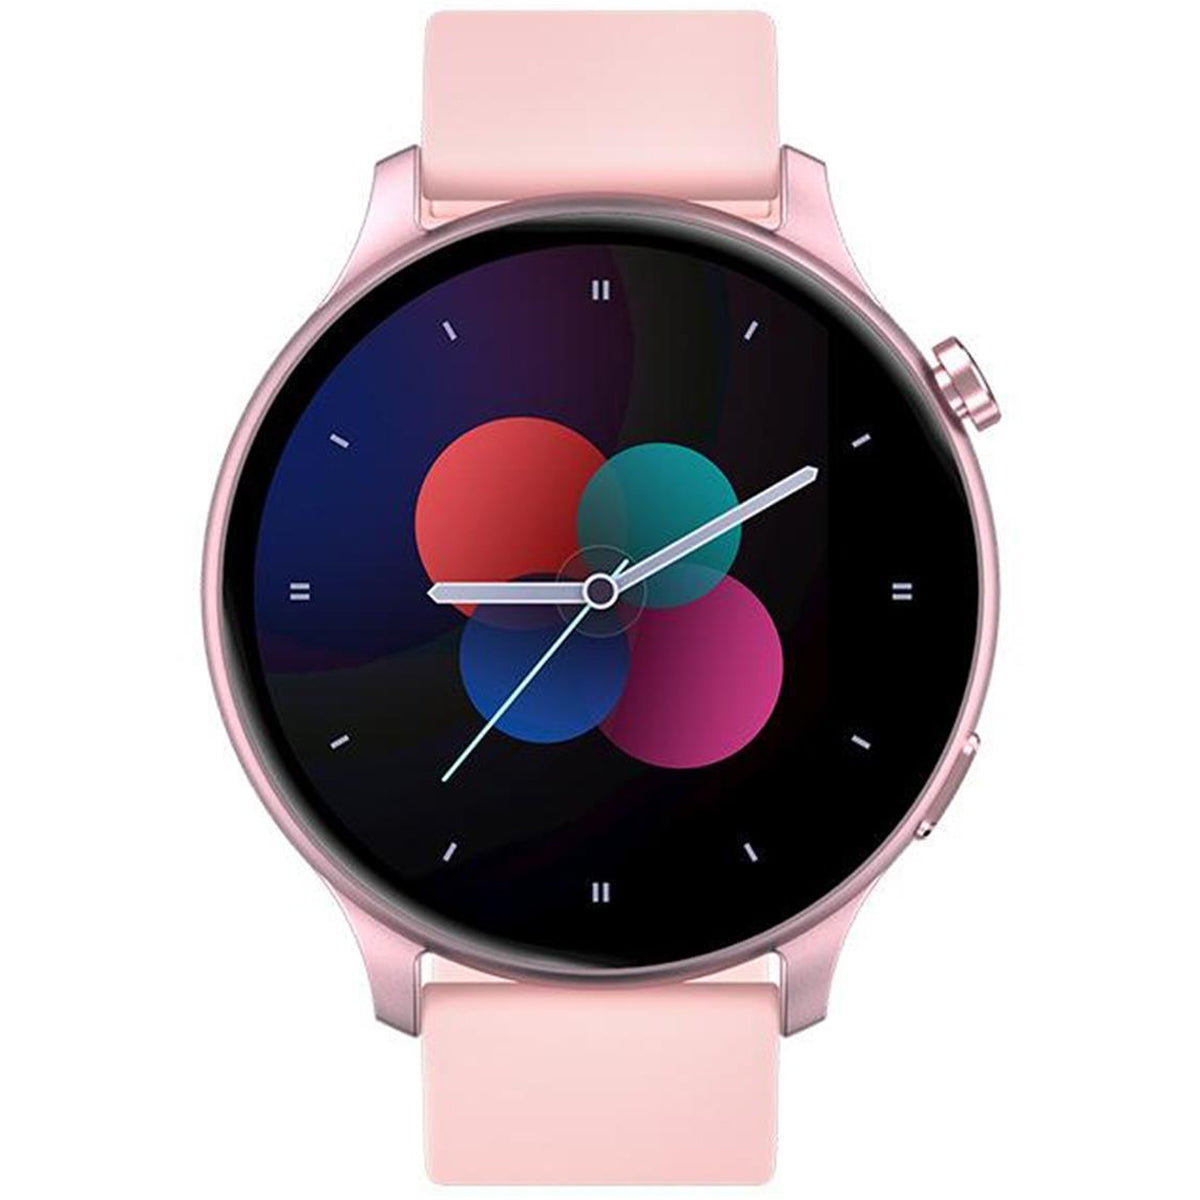 Fralugio Smart Watch Reloj Inteligente Gt3 Full Touch Hd Ips